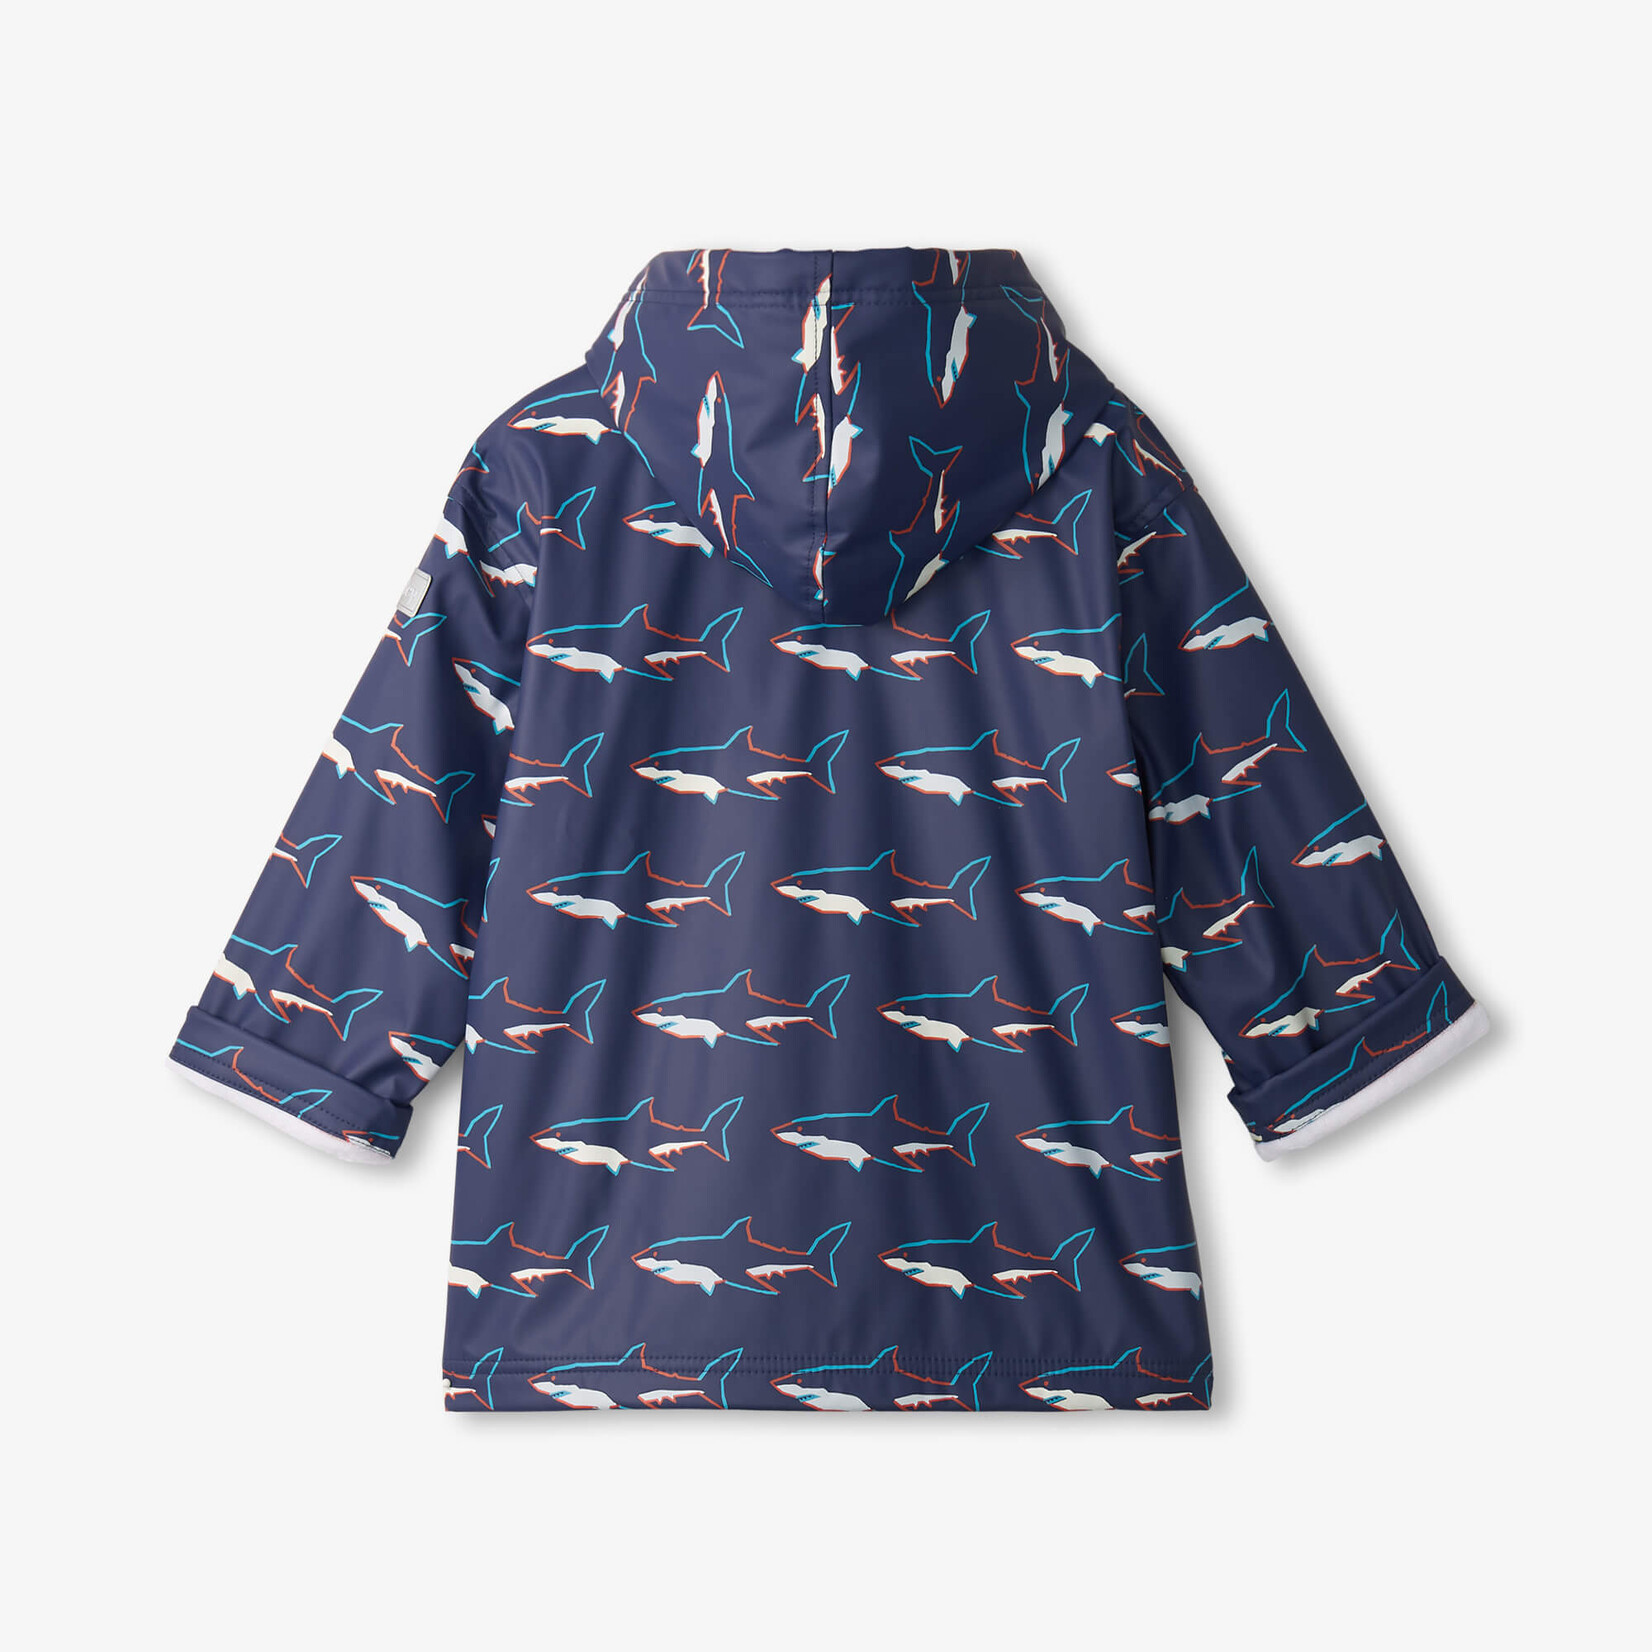 Hatley Hatley Zip Up Rain Jacket Colour Change Sharks Blue